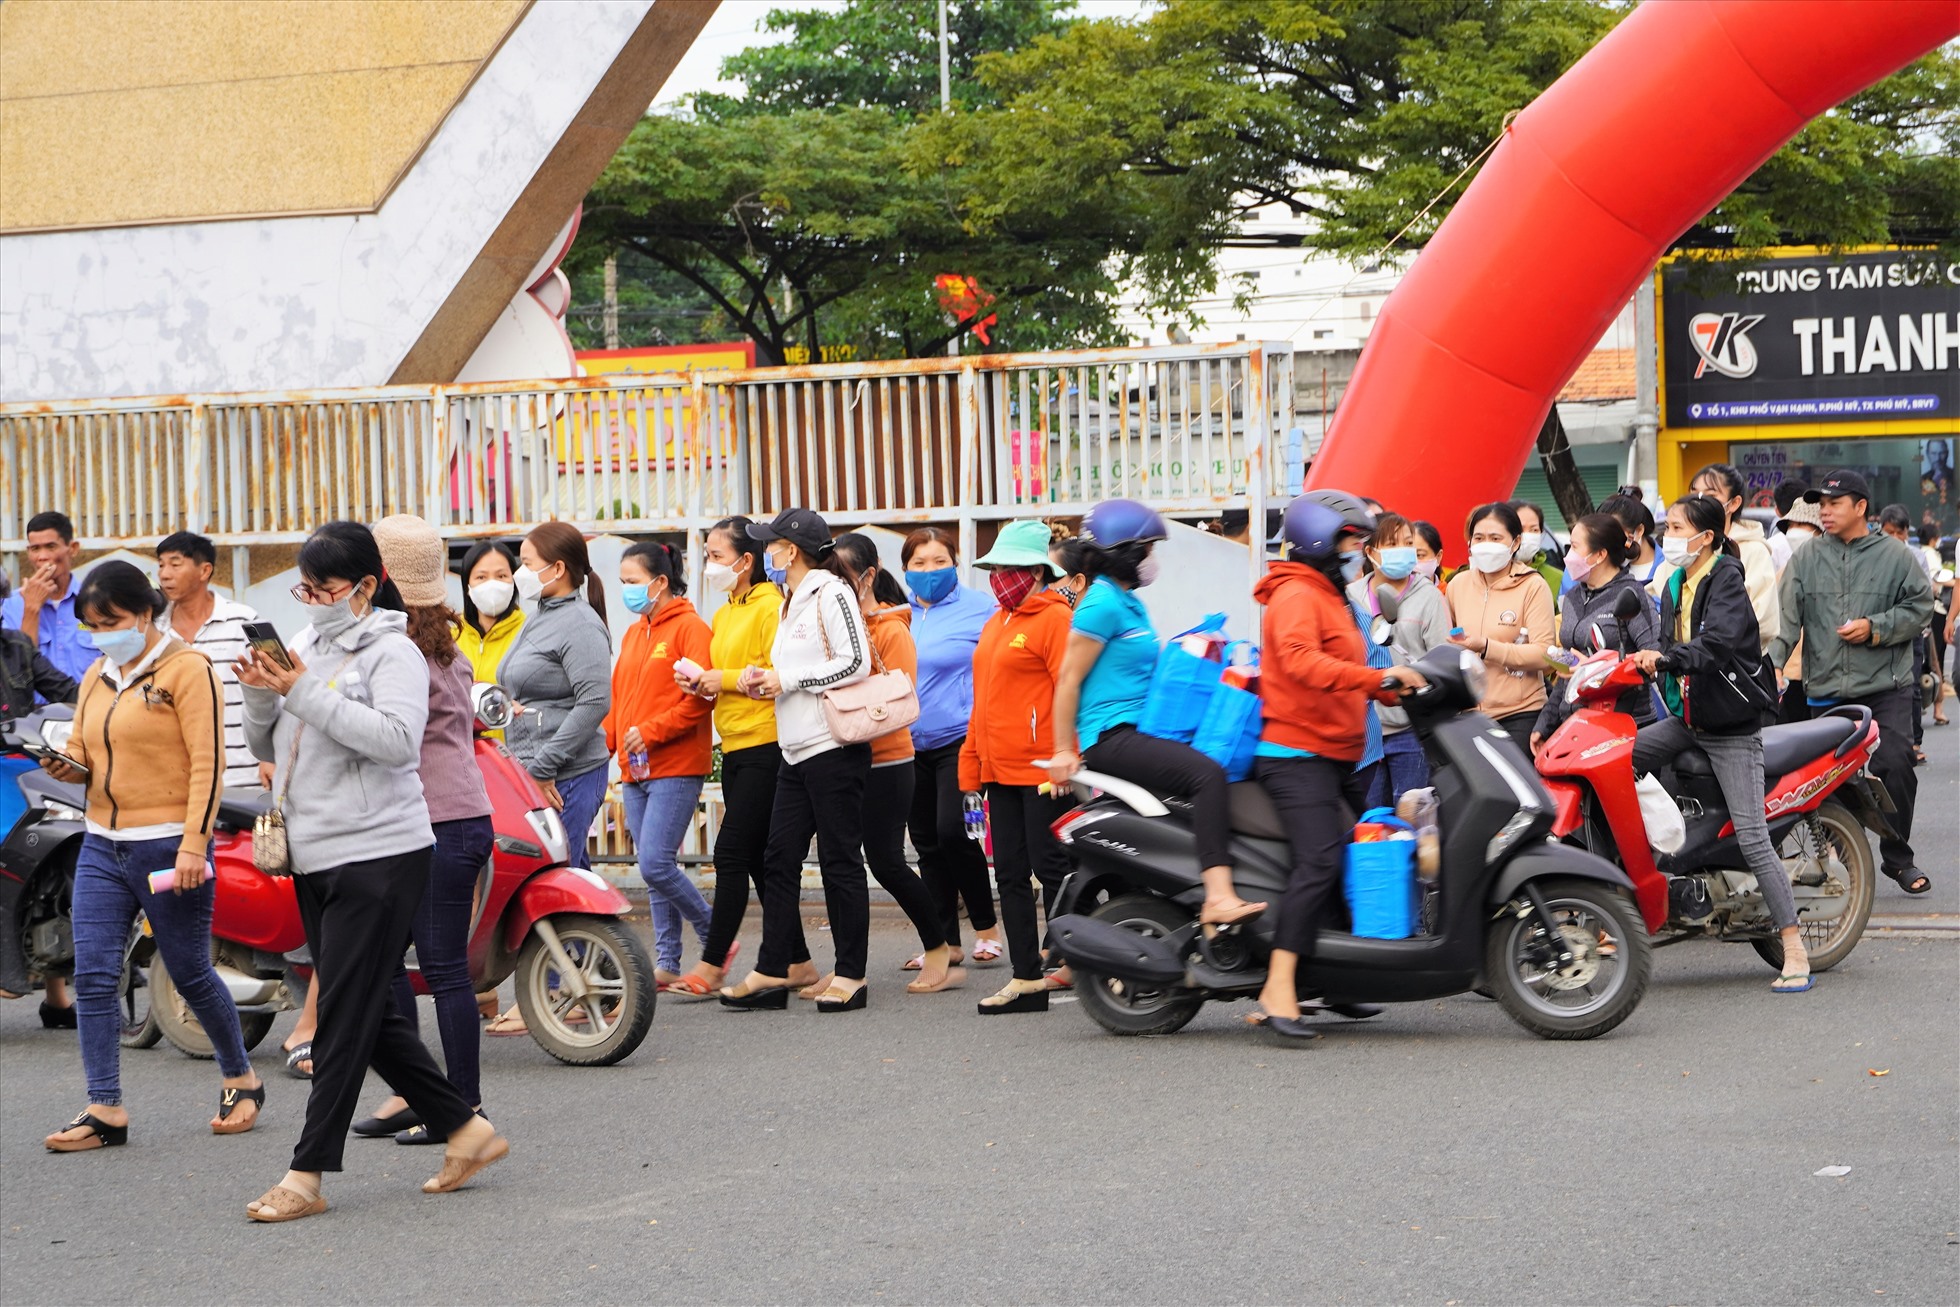 Khoảng 15h, đông đảo người lao động bắt đầu di chuyển đến khu vực tổ chức tham gia phiên chợ. Ảnh: Thành An